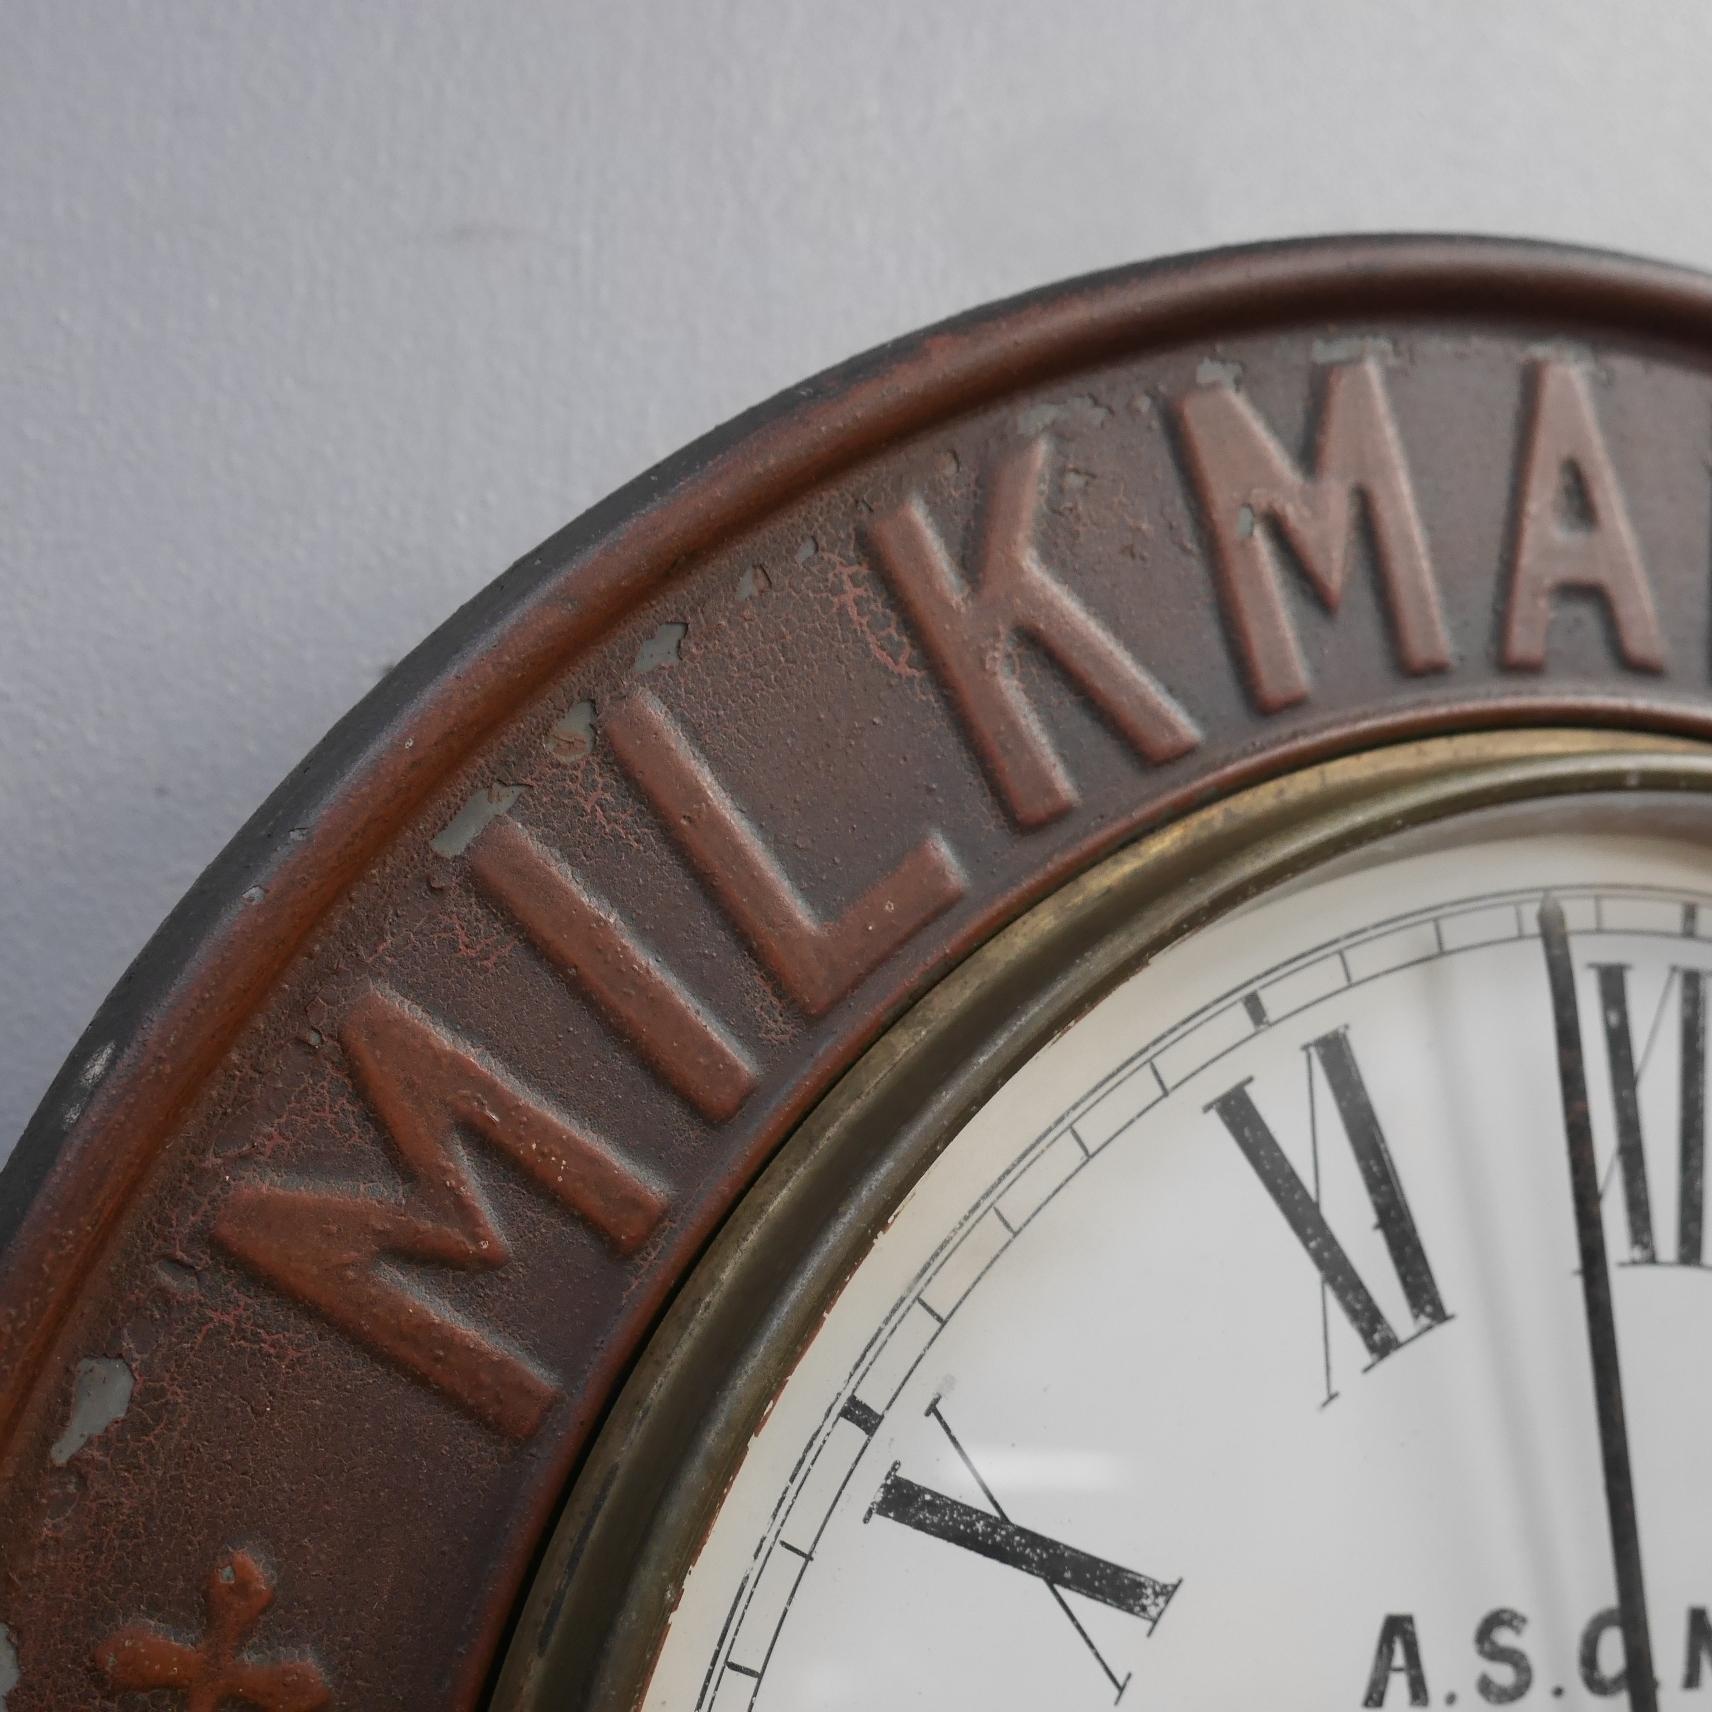 Horloge publicitaire d'un épicier anglais pour Milkmaid Milk.
Une superbe et très originale horloge publicitaire ancienne, avec une carcasse en bois et un cadre en étain/zinc pressé, avec une peinture d'origine. Avec une merveilleuse patine d'âge,